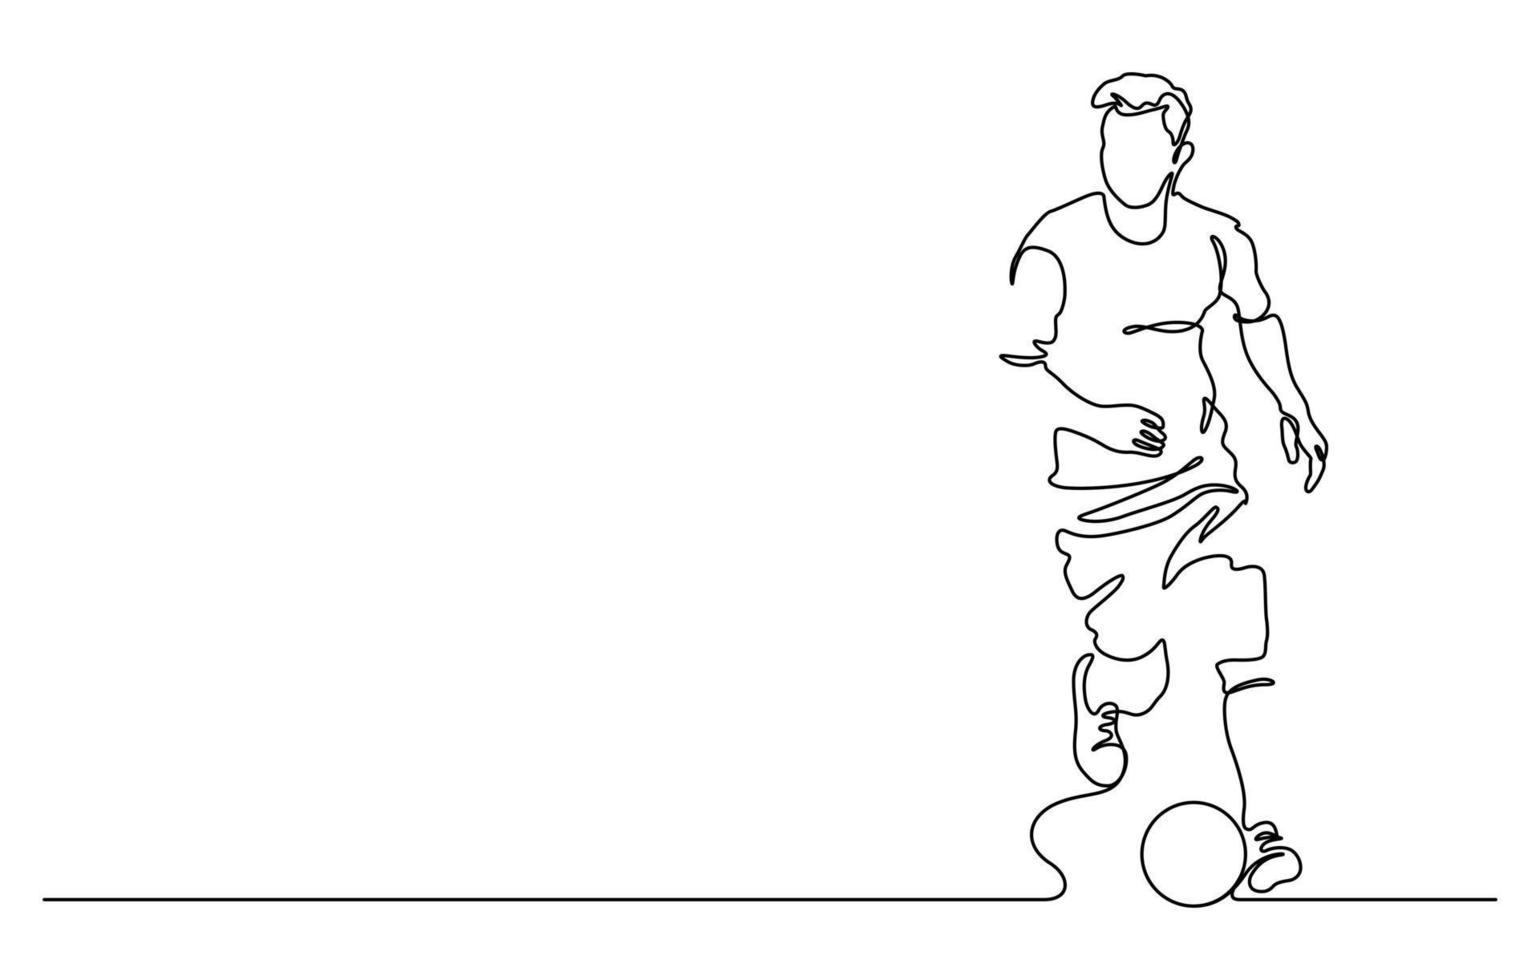 dessin au trait continu de l'homme jouant au football illustration vectorielle vecteur